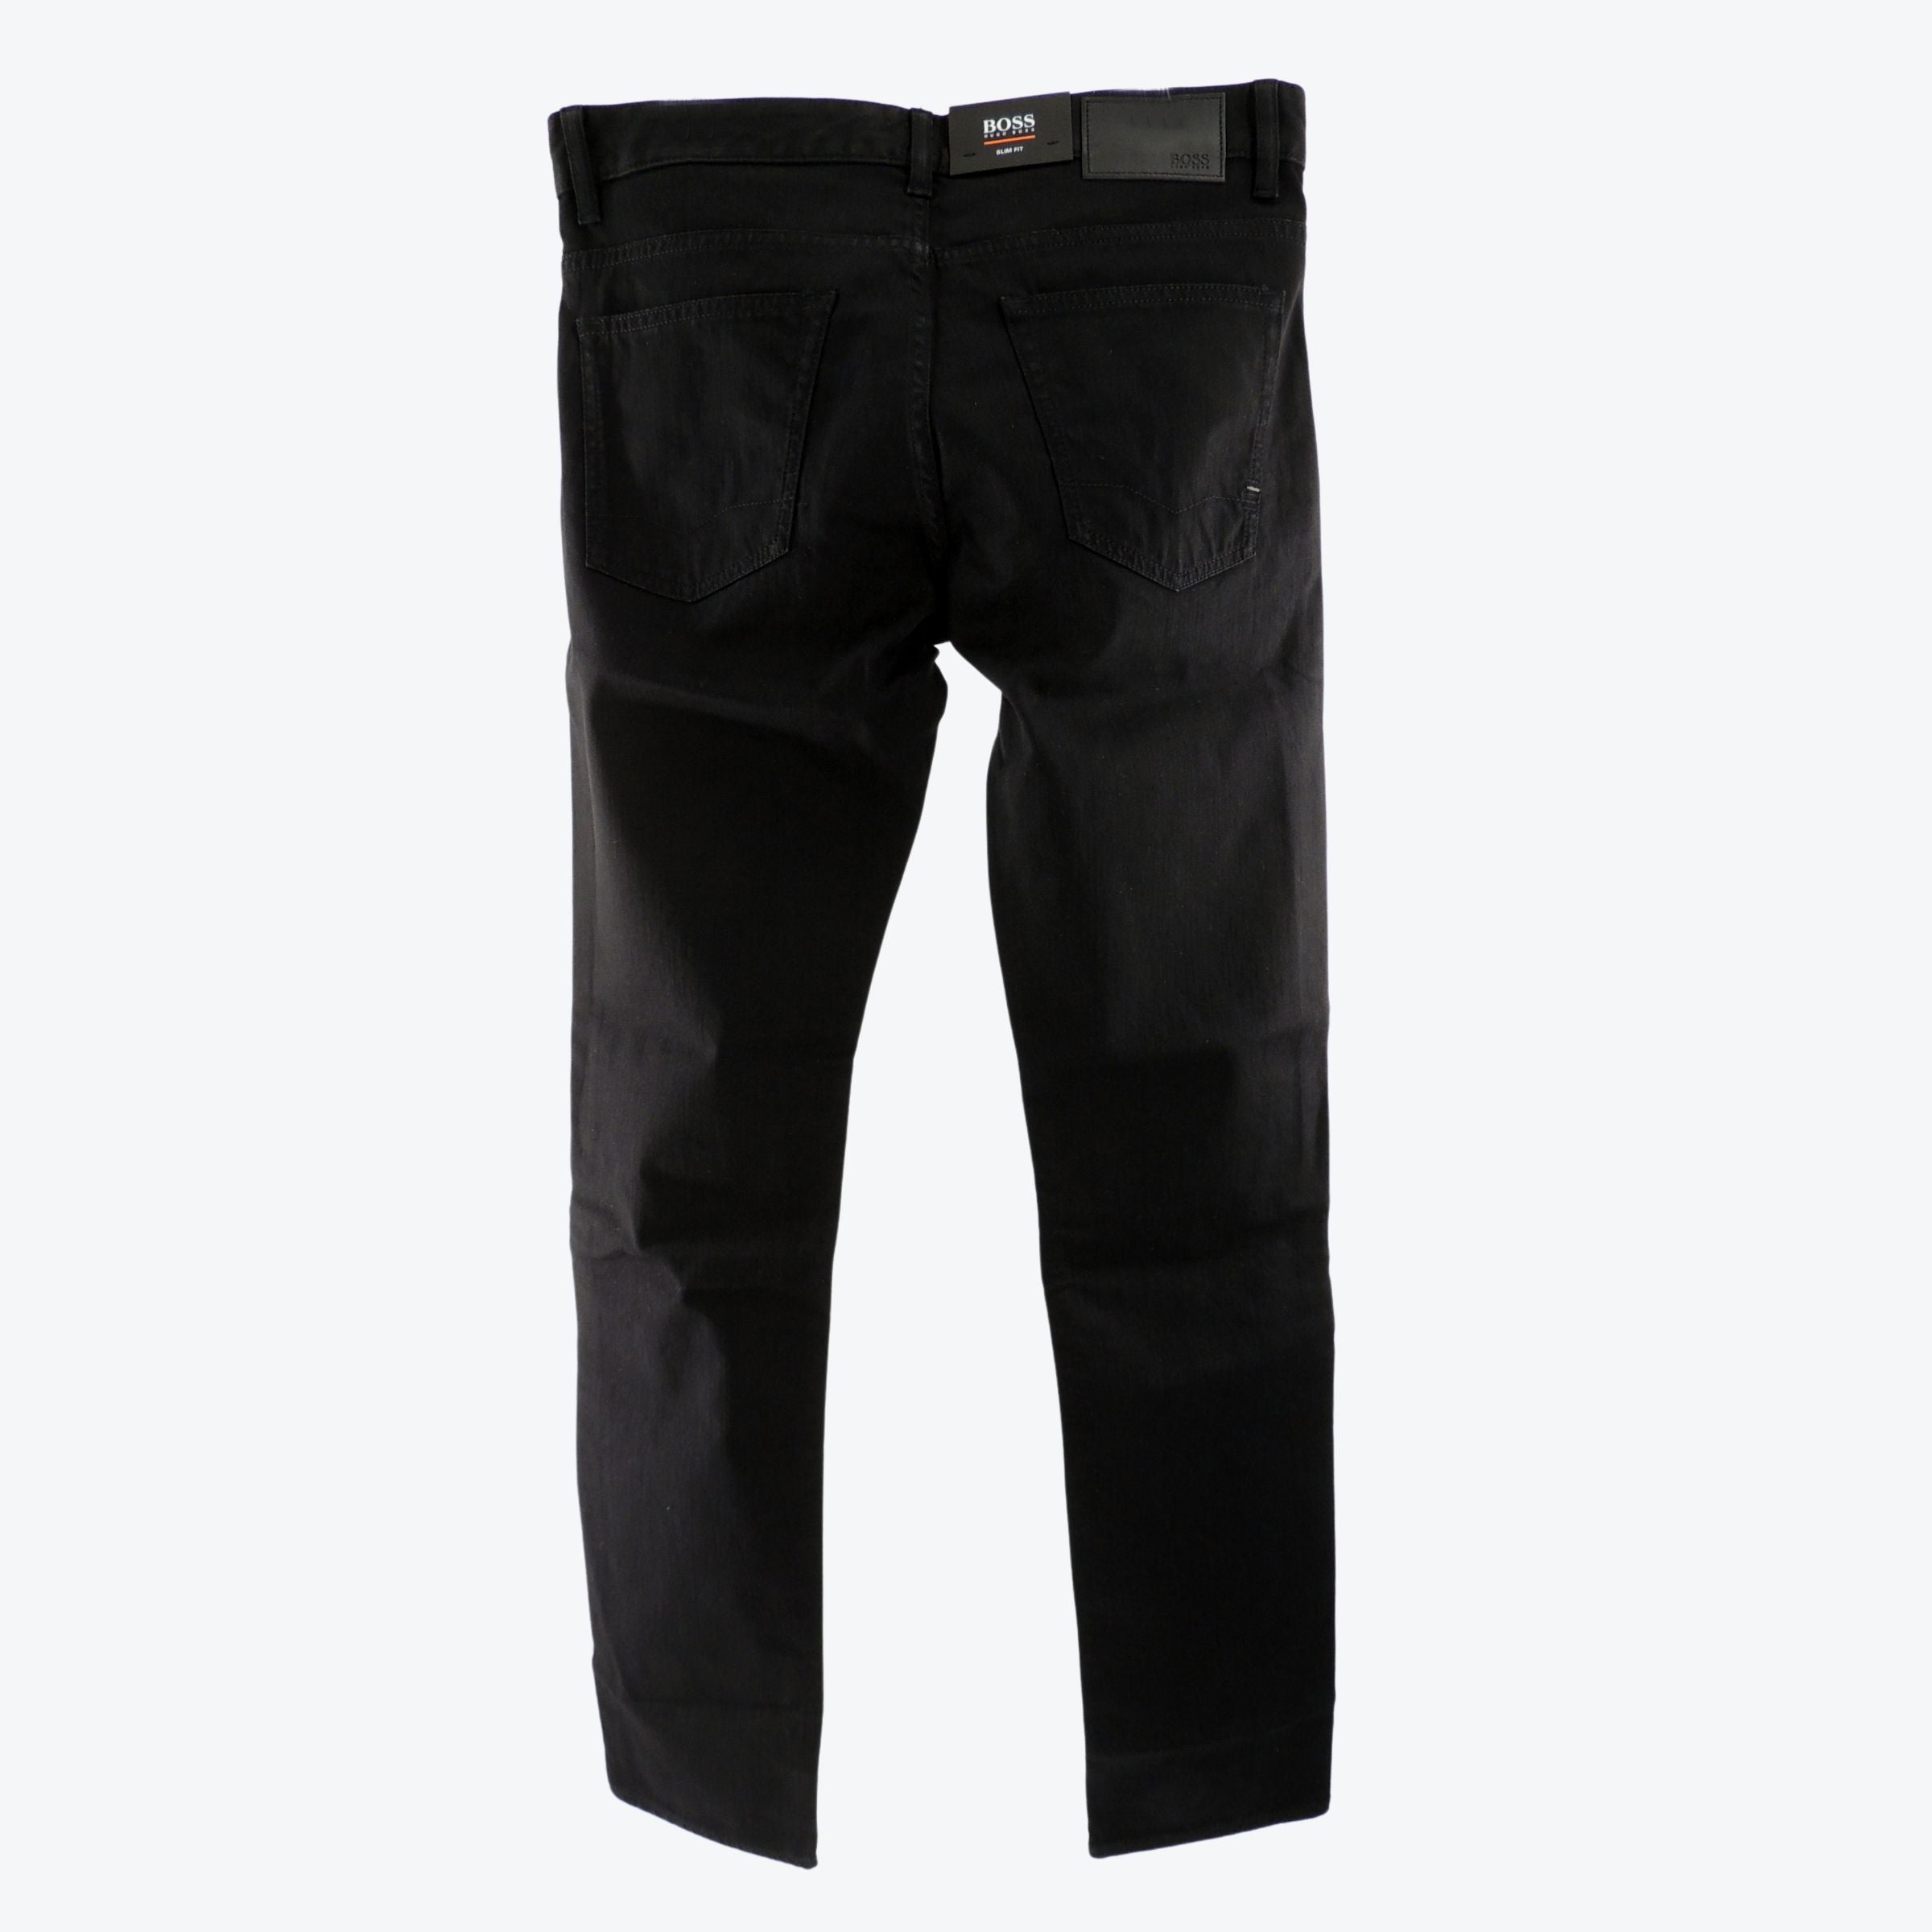 Hugo Boss Delaware Slim Fit Jeans in Black 34 x 34